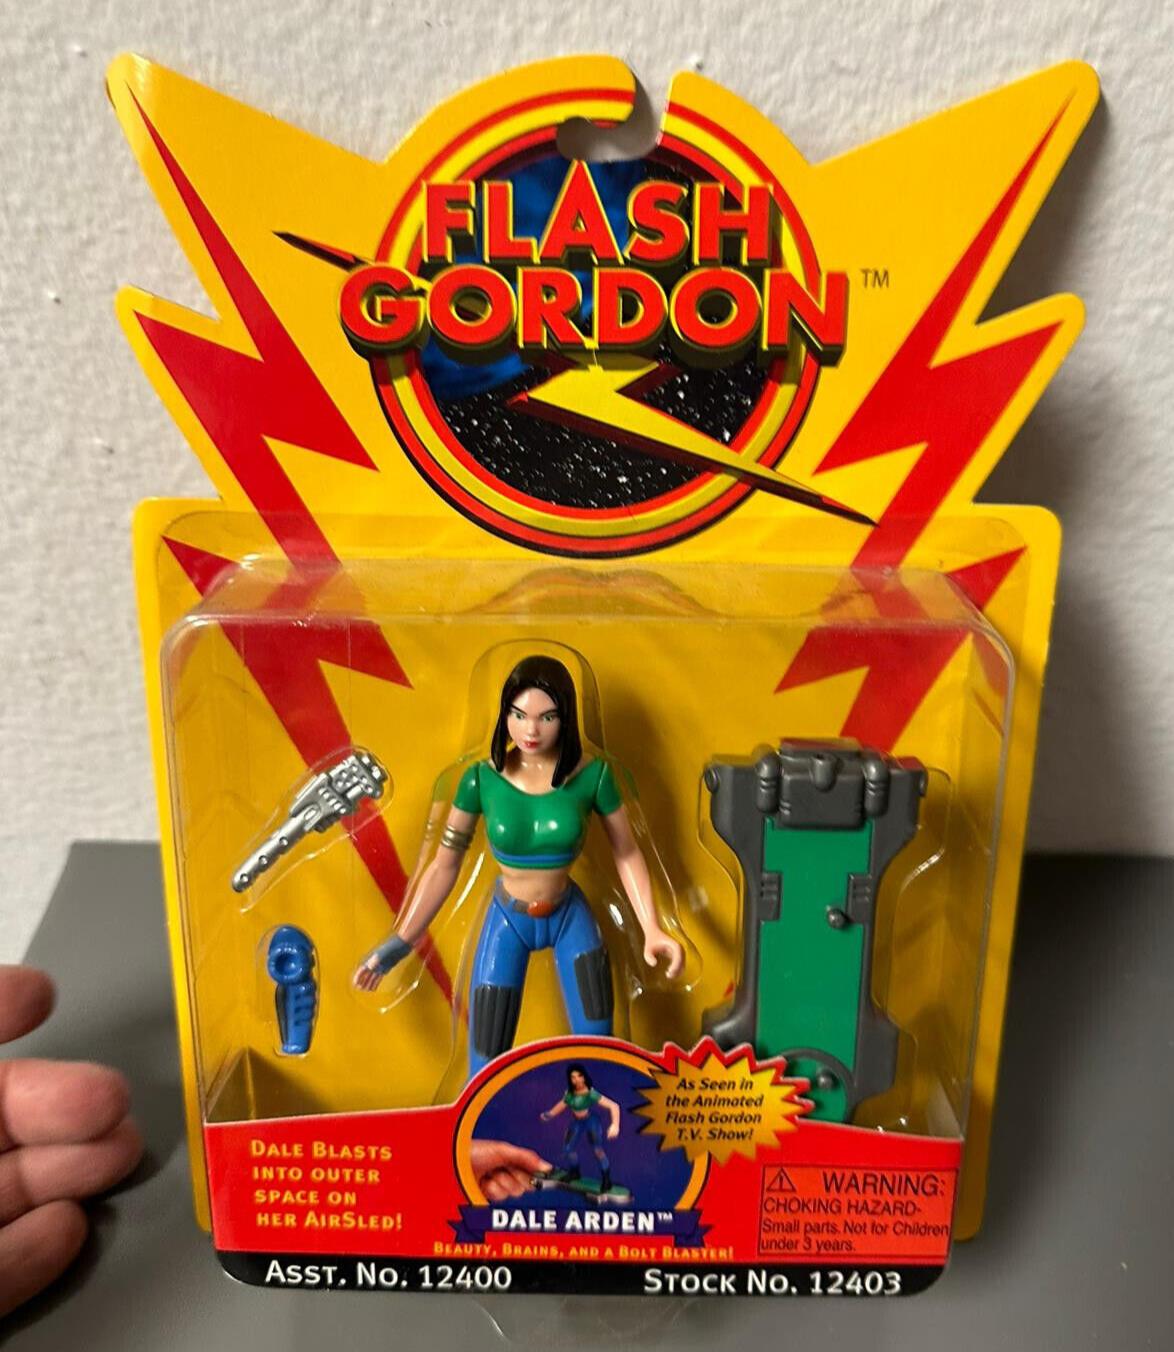 Vintage 1996 Playmates "Flash Gordon - Dale Arden" Action Figure